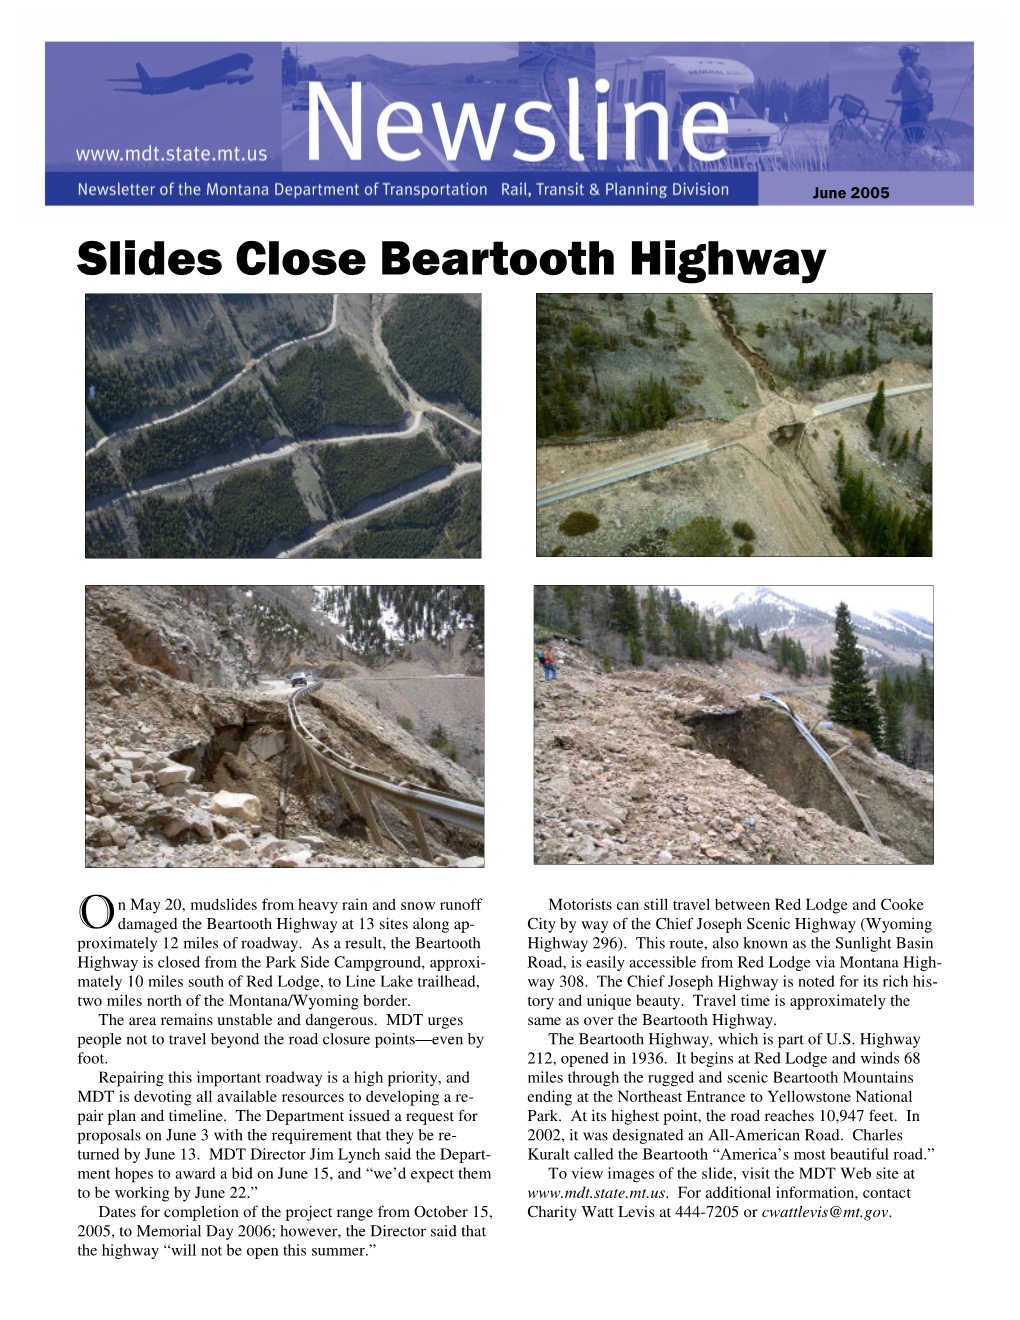 Slides Close Beartooth Highway